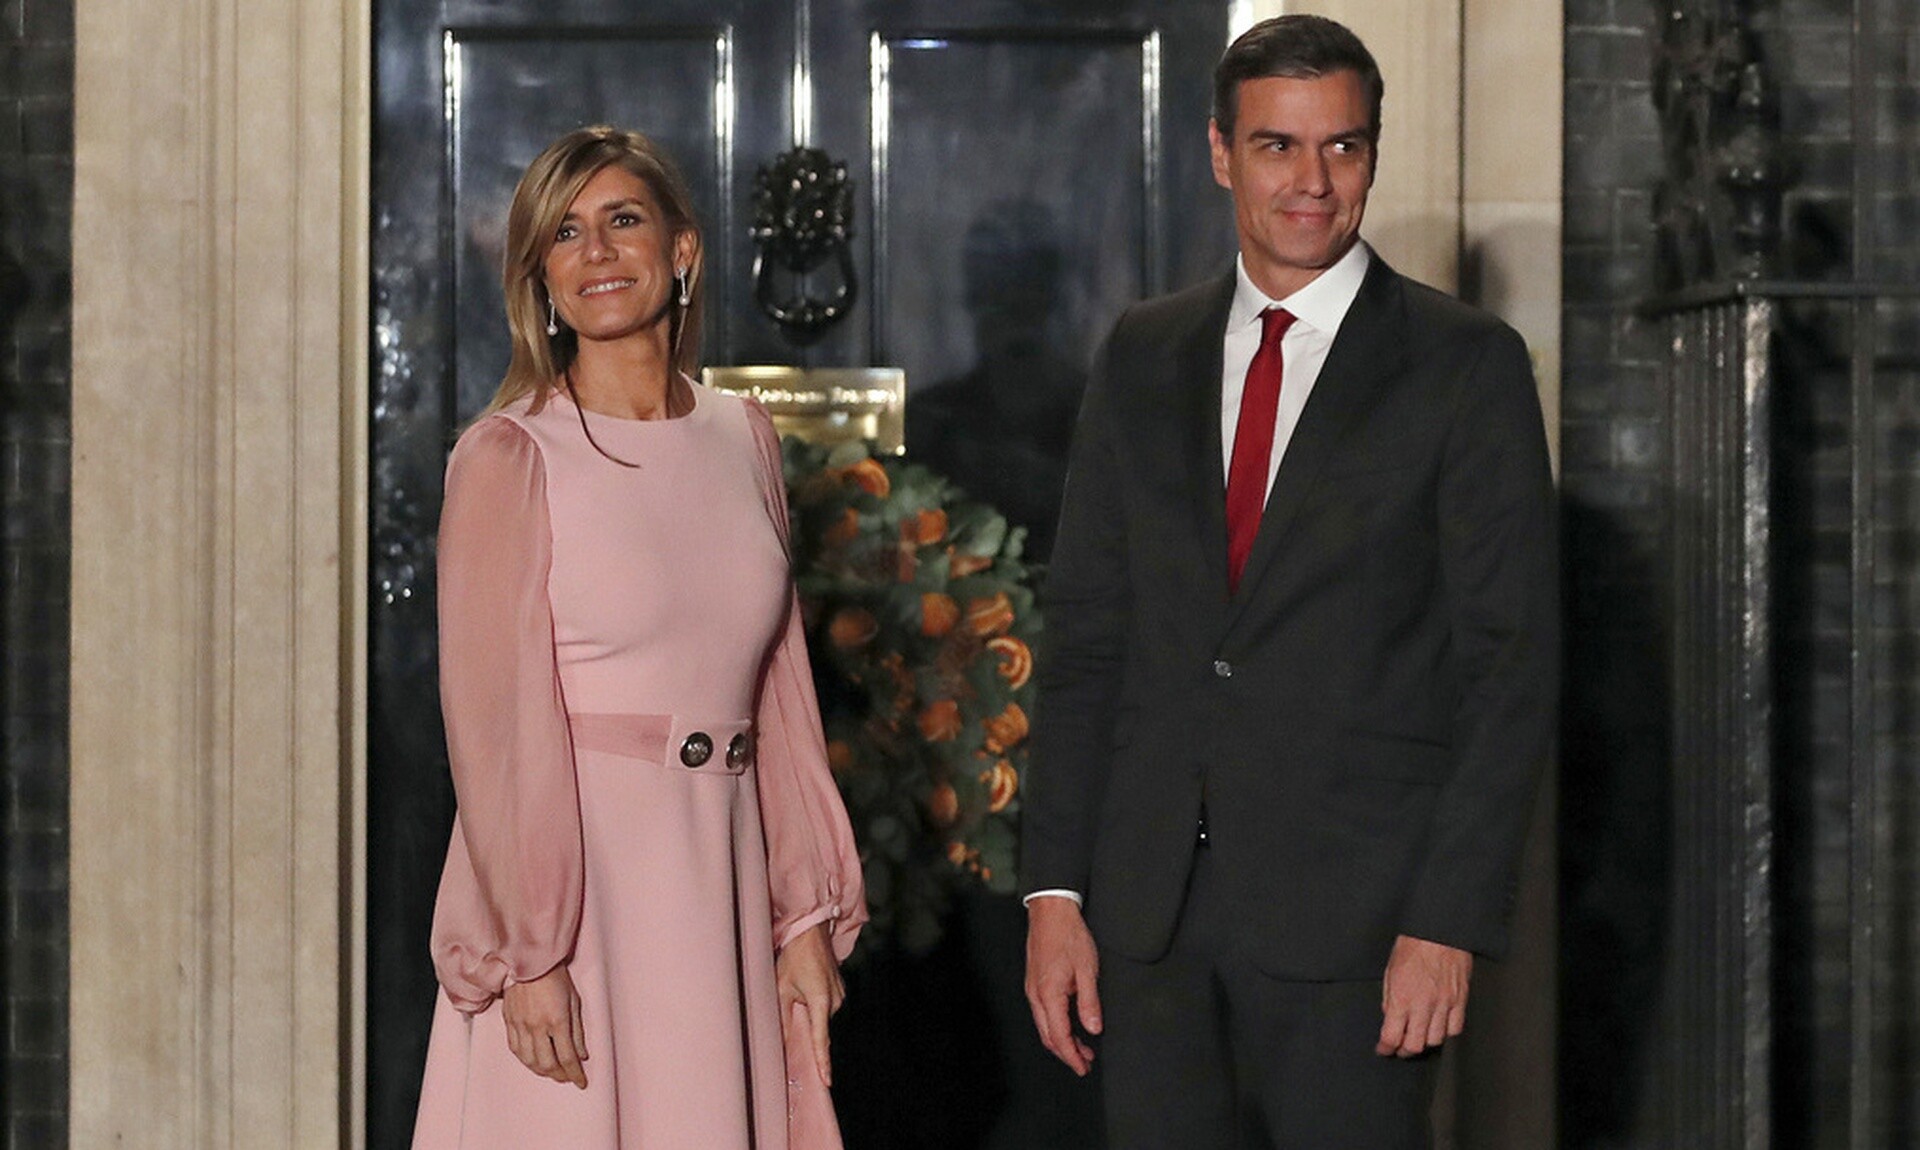 Πολιτική θύελλα στην Iσπανία: Σκέφτεται να παραιτηθεί ο Σάντσεθ - Οι καταγγελίες για τη σύζυγό του